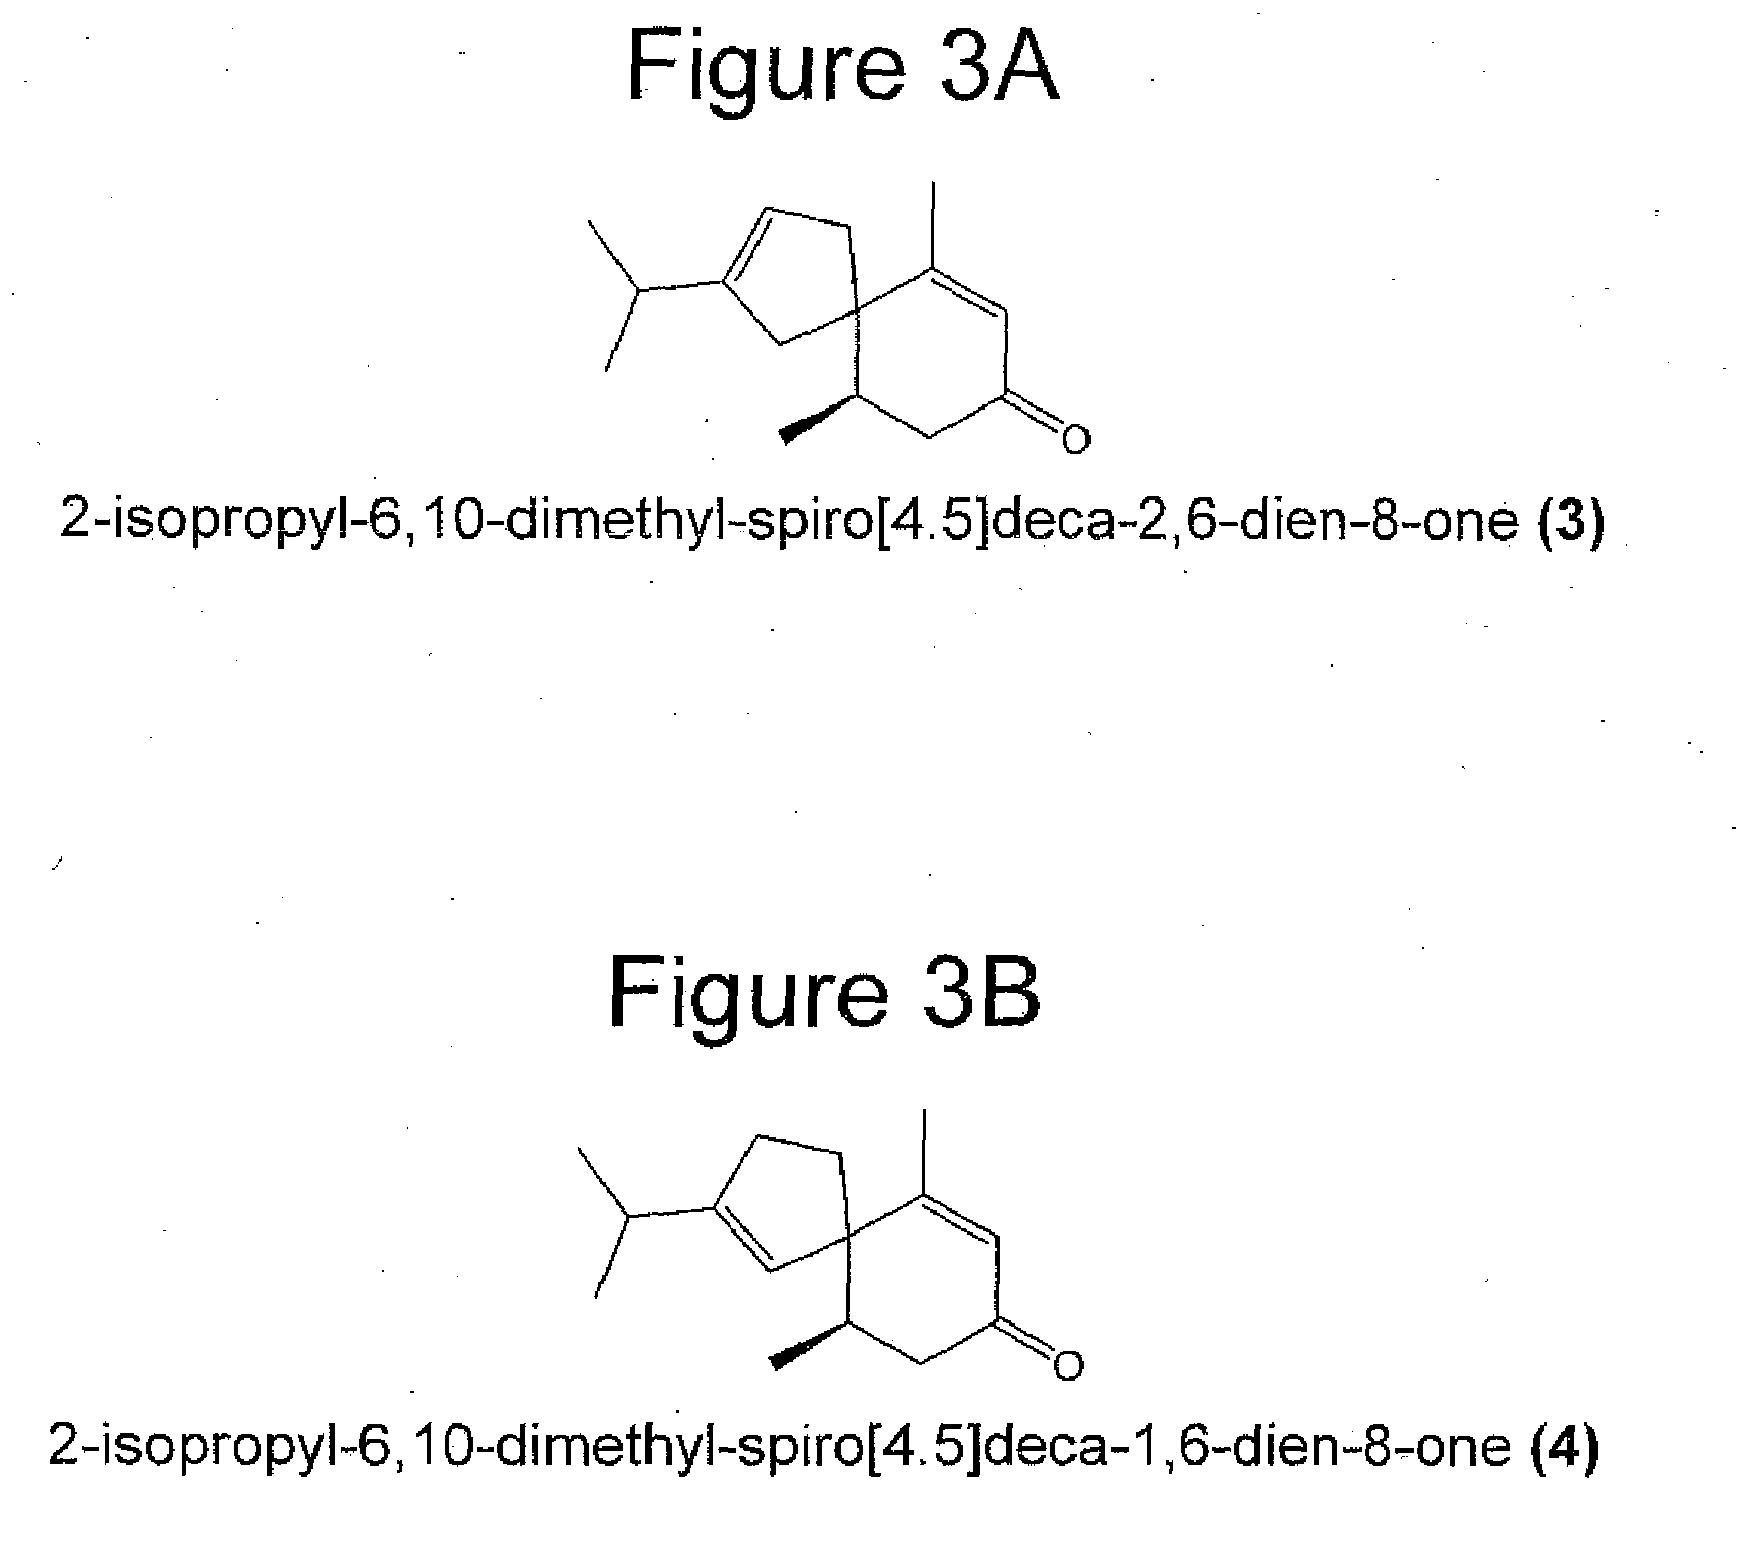 Novel fragrance and methods for production of 5-epi-beta-vetivone, 2-isopropyl-6,10-dimethyl-spiro[4.5]deca-2,6-dien-8-one, and 2-isopropyl-6,10-dimethyl-spiro[4.5]deca-1,6-dien-8-one